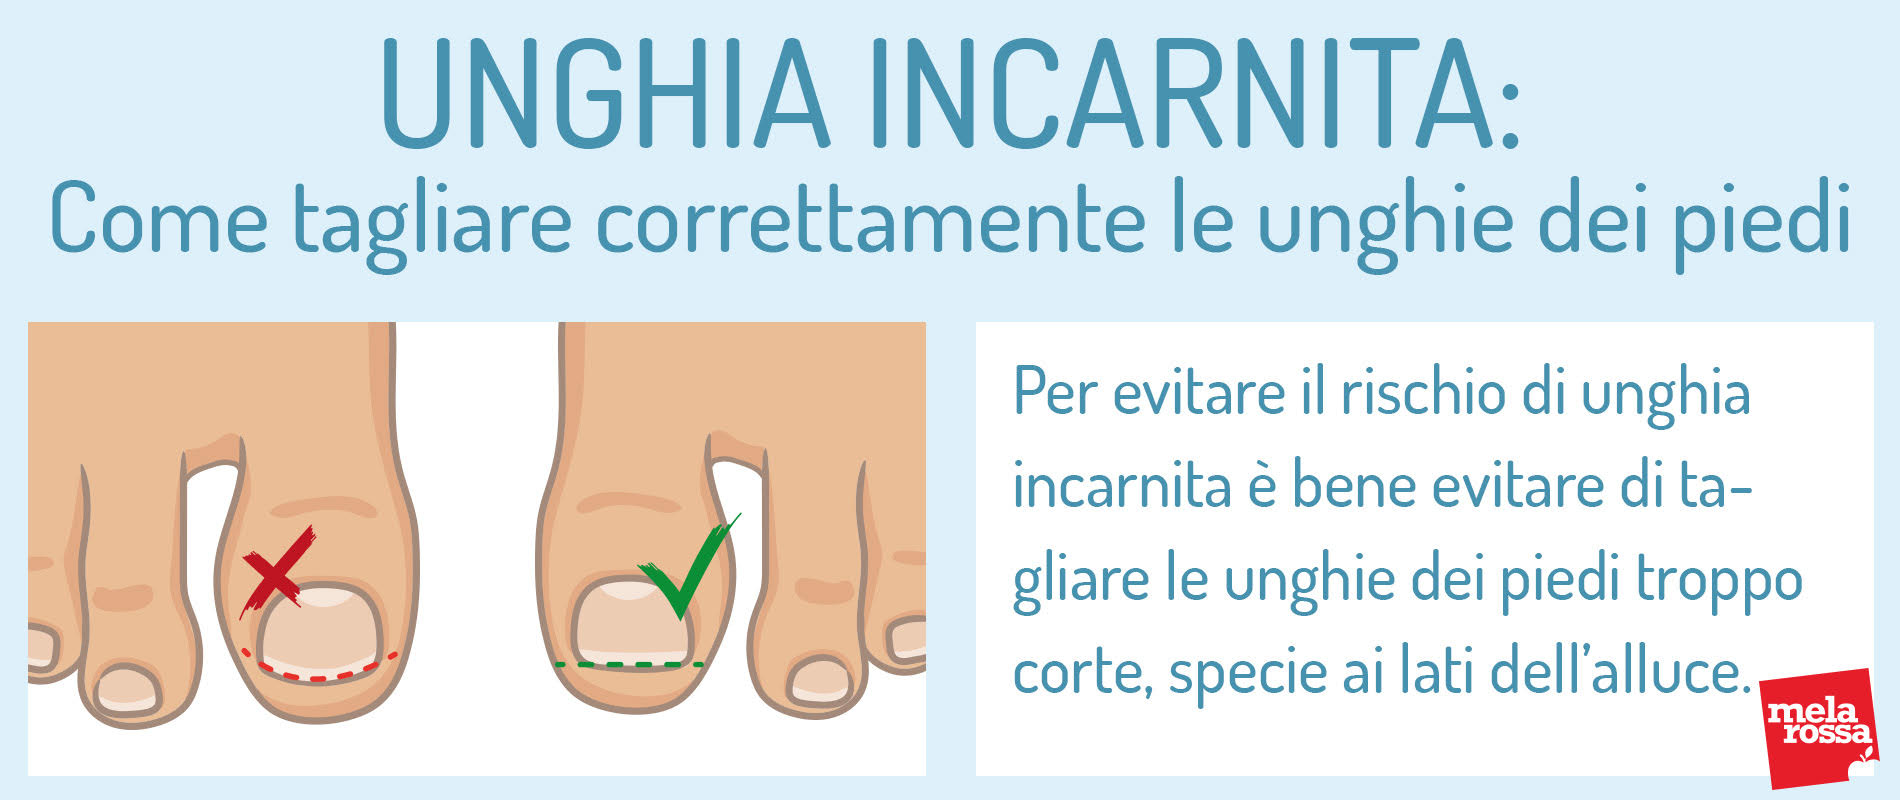 Unghia incarnita: come tagliare correttamente le unghie dei piedi